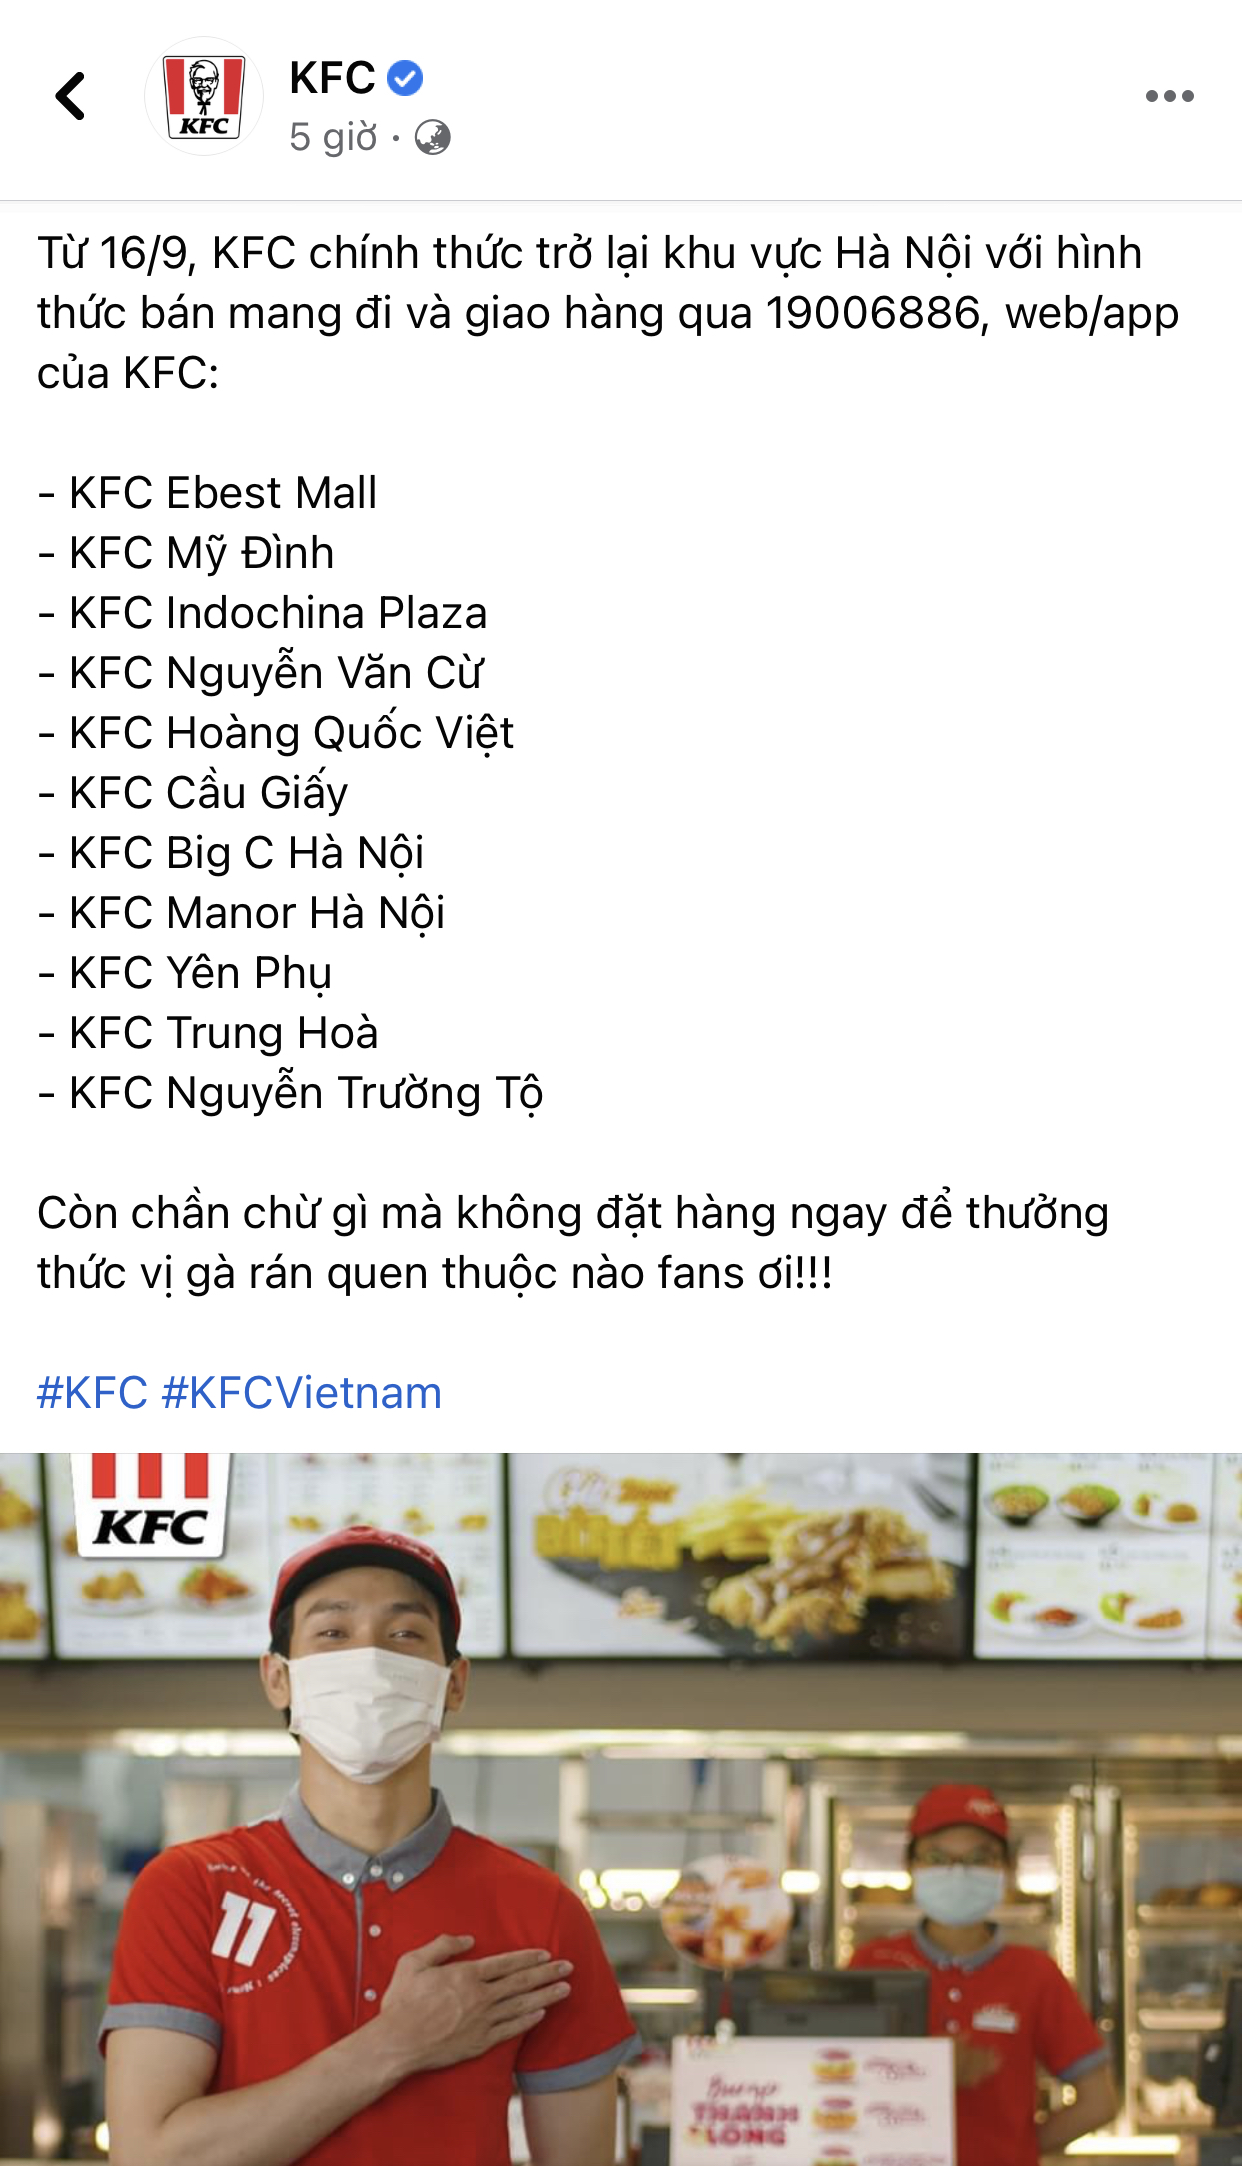 HOT: 10 hãng thức ăn nhanh đình đám nhất Việt Nam thông báo thời gian mở cửa trở lại, Sài Gòn có 2 nơi duy nhất comeback - Ảnh 4.